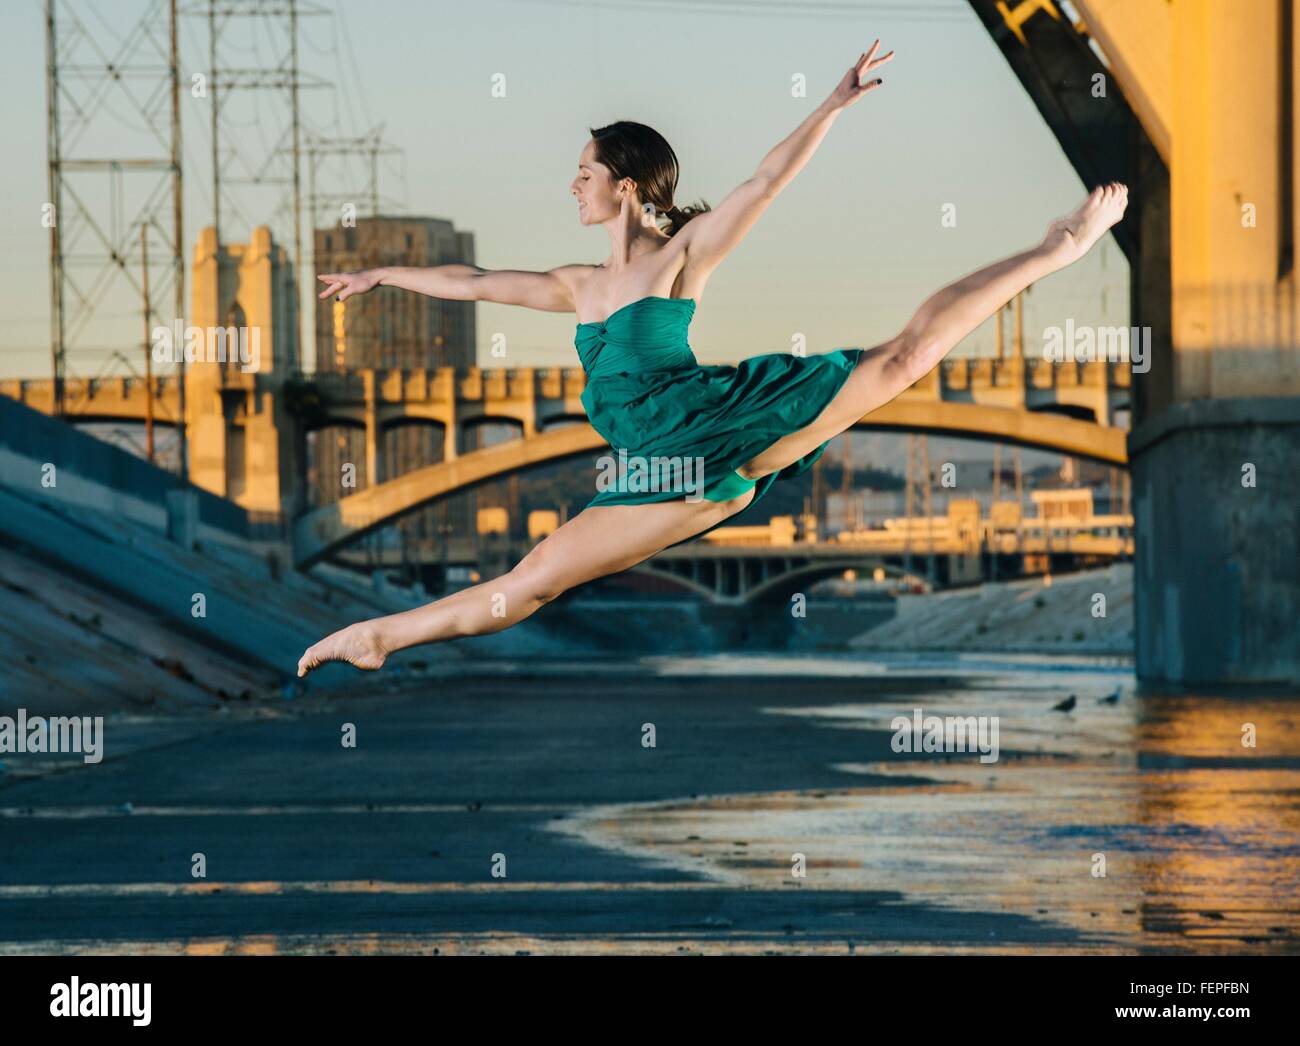 Jeune danseuse en sautant dans les airs, Los Angeles, USA Banque D'Images